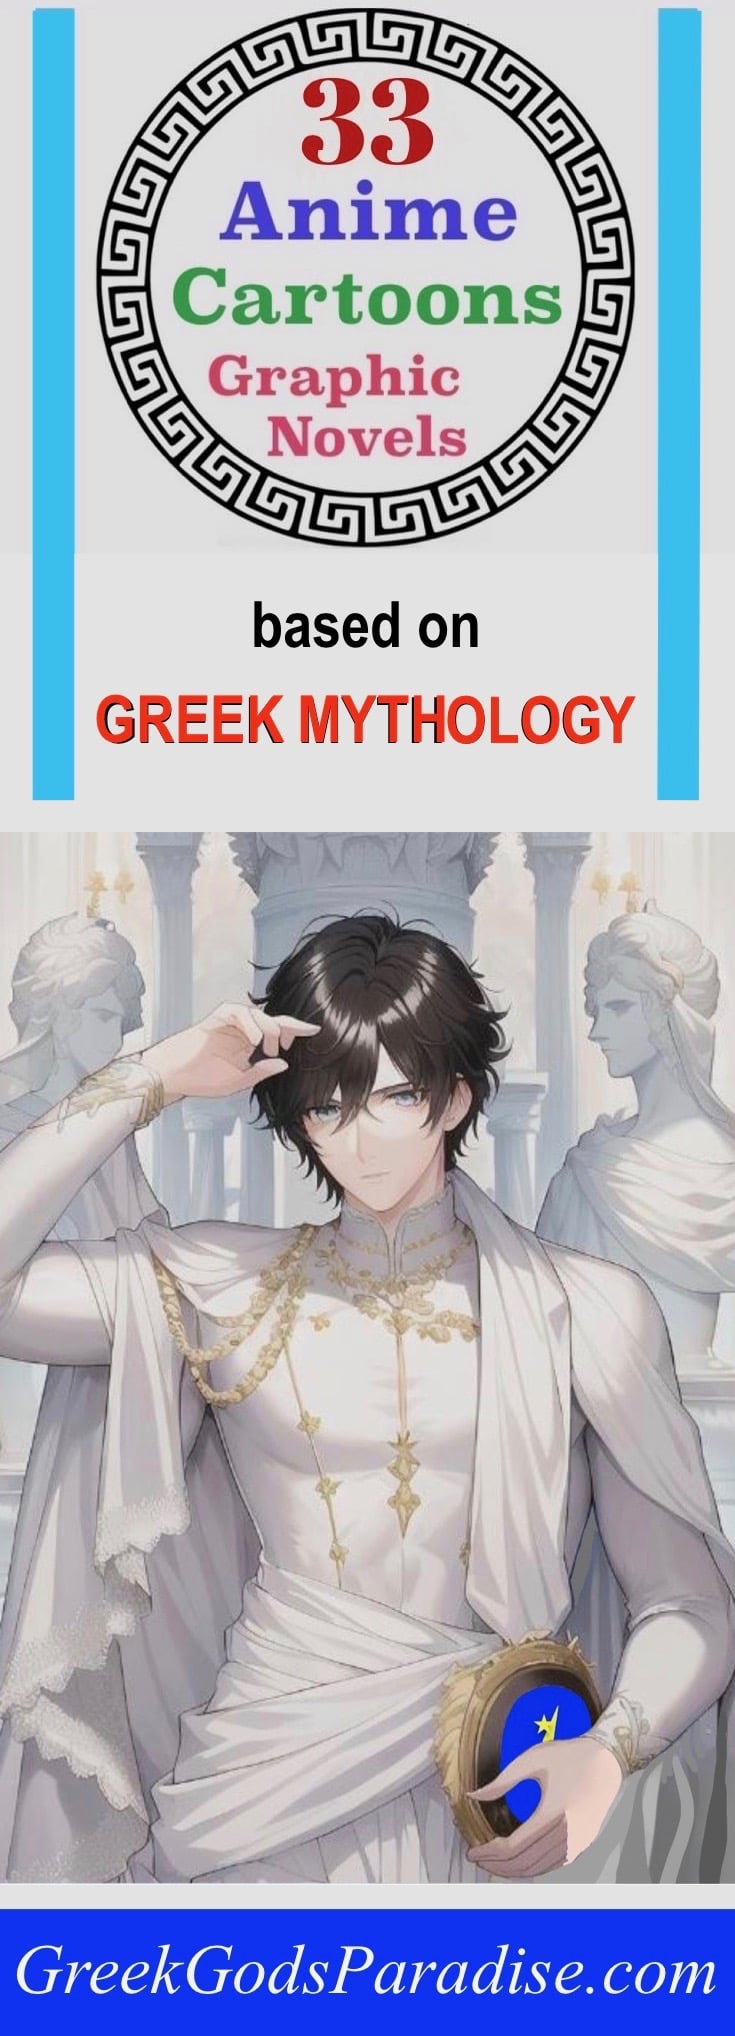 Greek Mythology Anime Cartoons and Graphic Novels